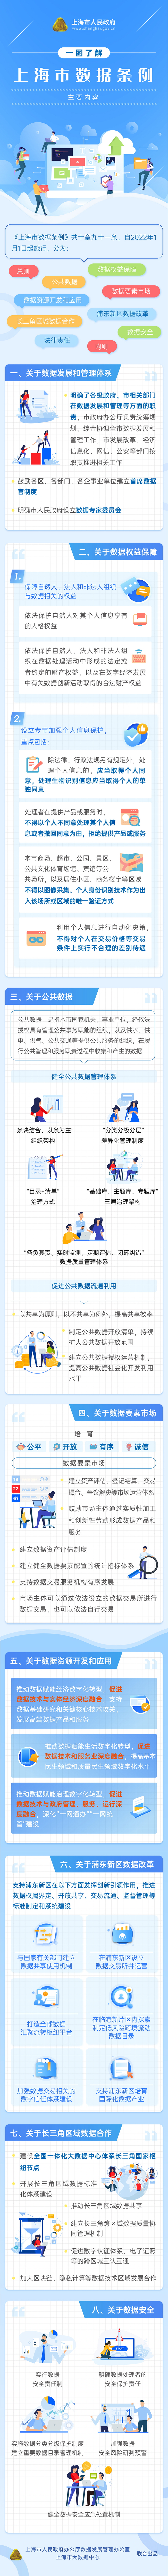 一图了解《上海市数据条例》主要内容.jpg